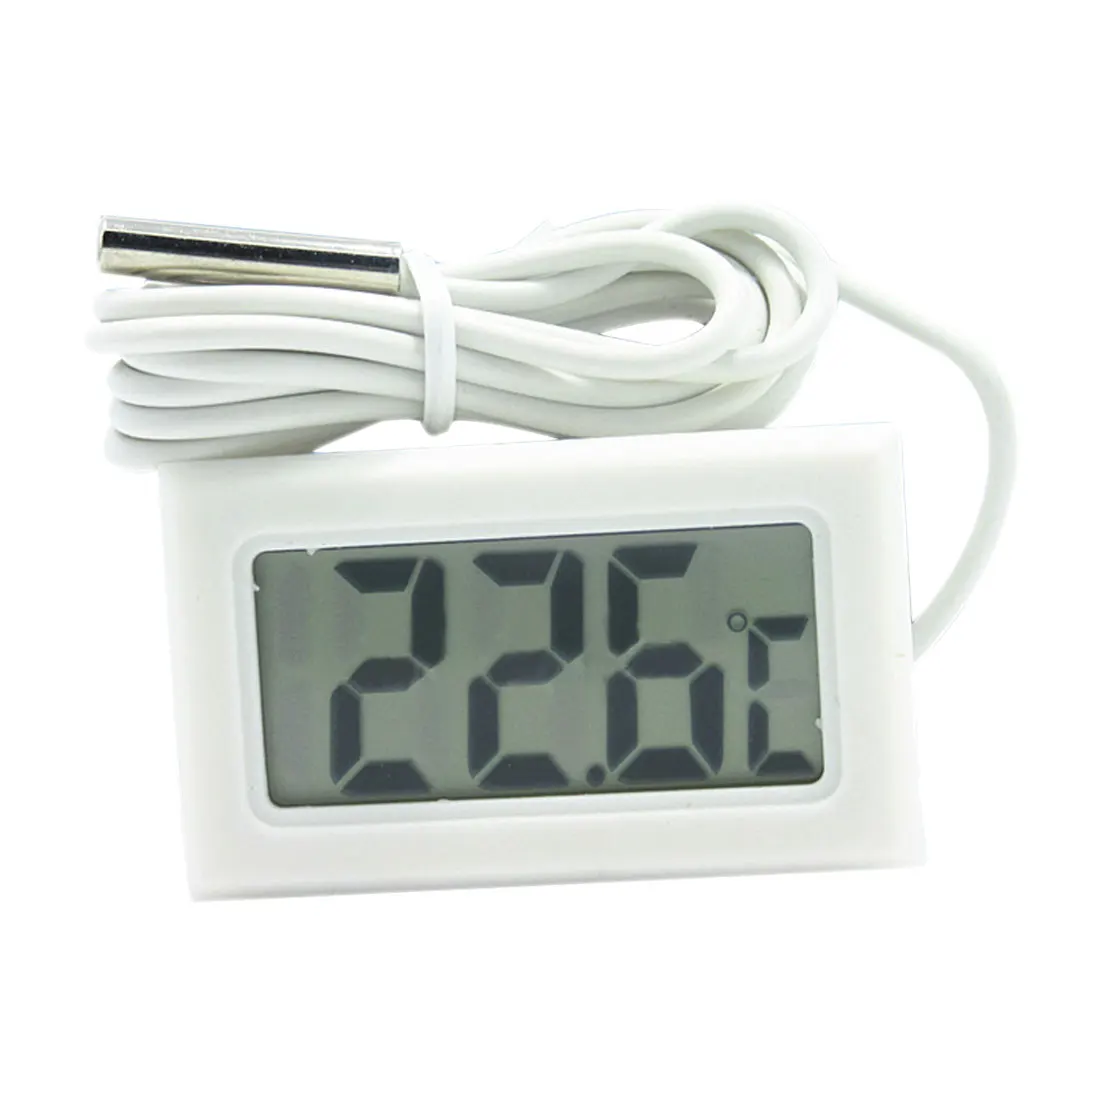 Мини ЖК-дисплей цифровой термометр 2 м 1,5 в термометр для холодильника датчик температуры морозильная камера Термометры для внутреннего и наружного использования - Цвет: 1M white